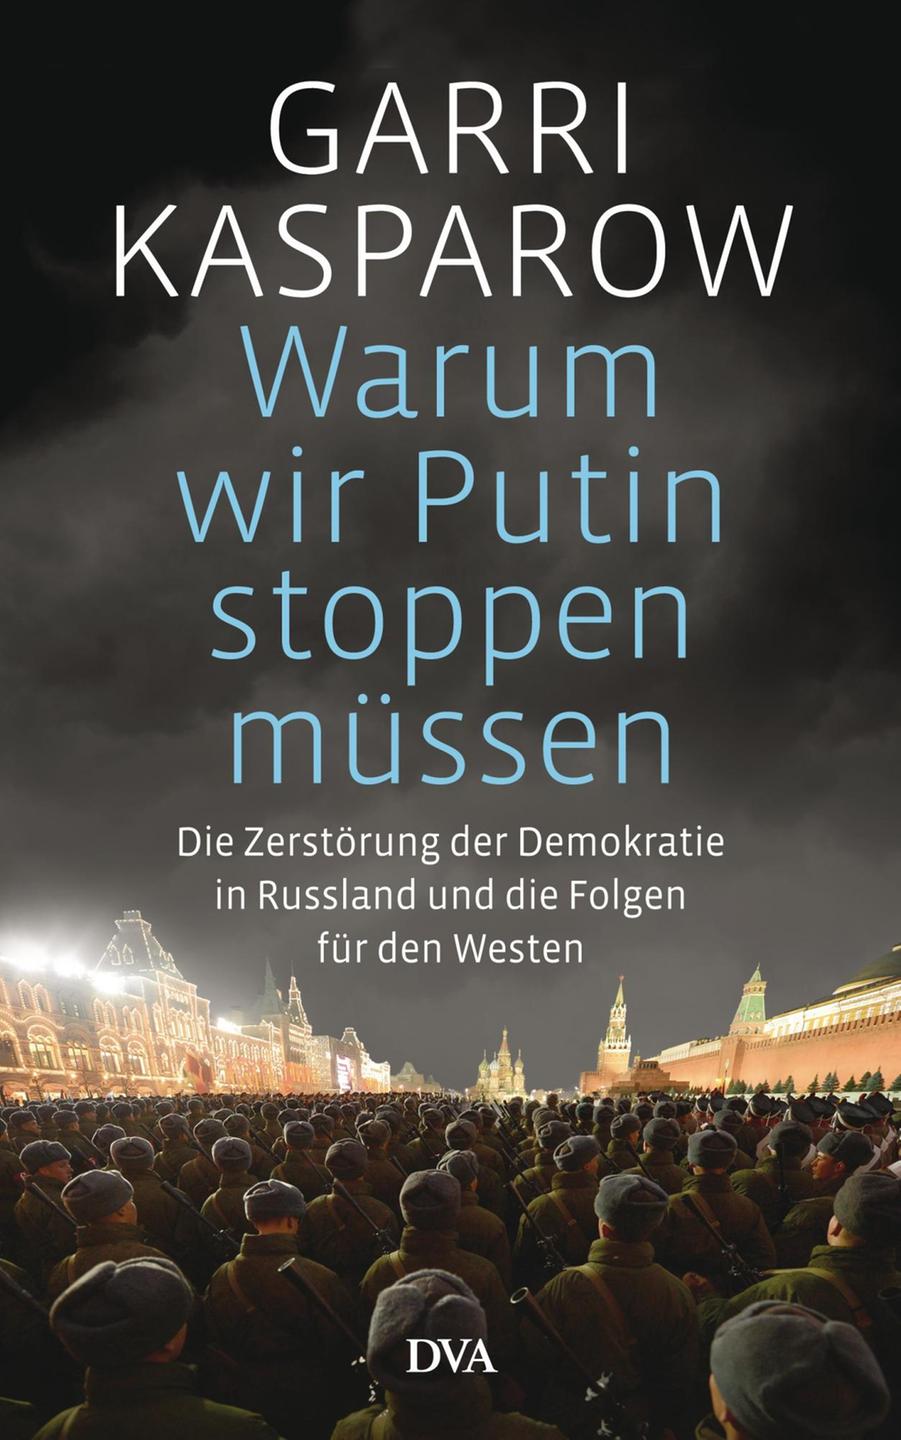 Buchcover "Warum wir Putin stoppen müssen. Die Zerstörung der Demokratie in Russland" von Garri Kasparow